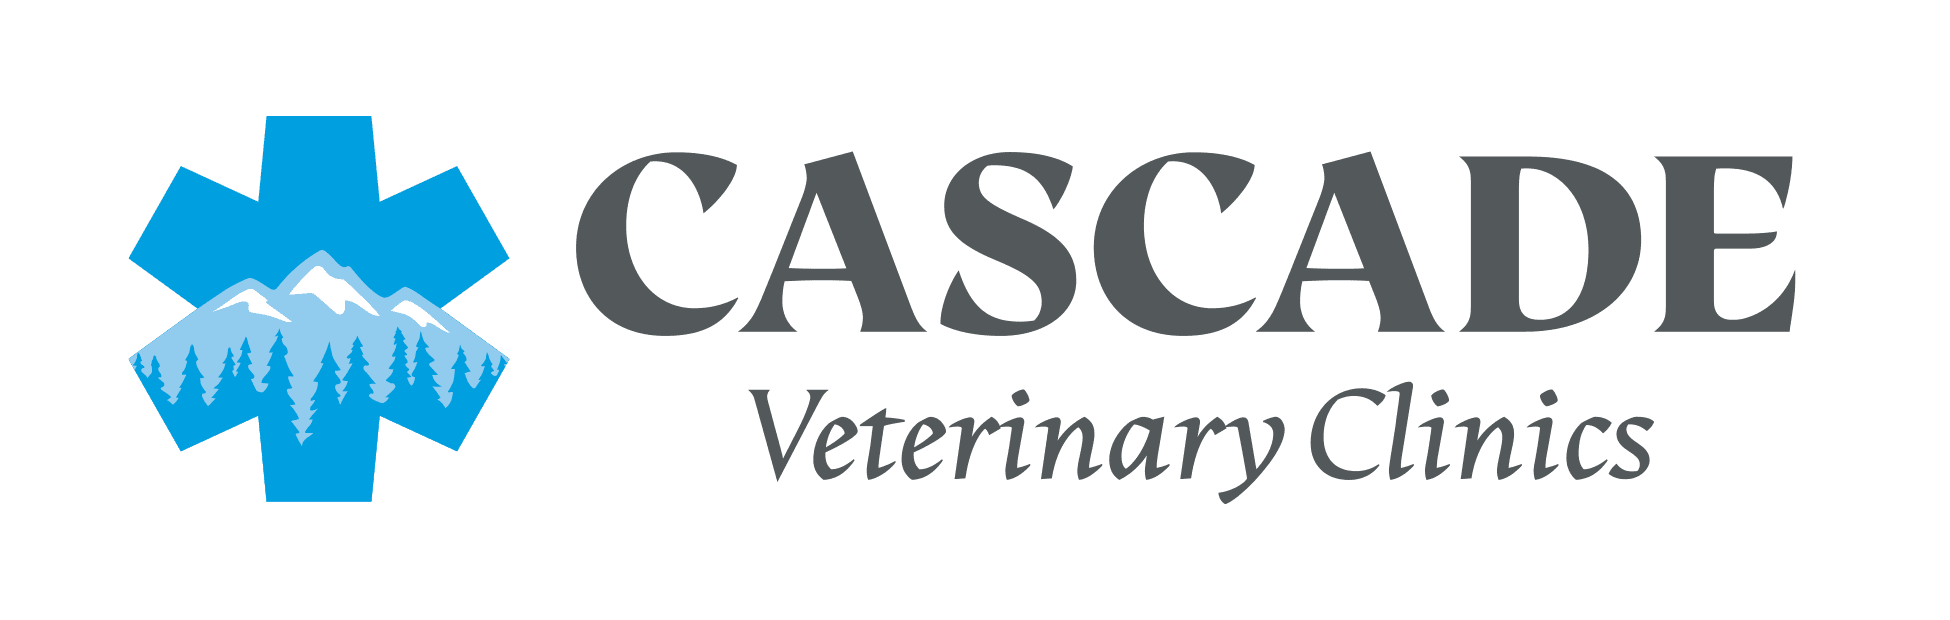 Cascade Veterinary Clinics